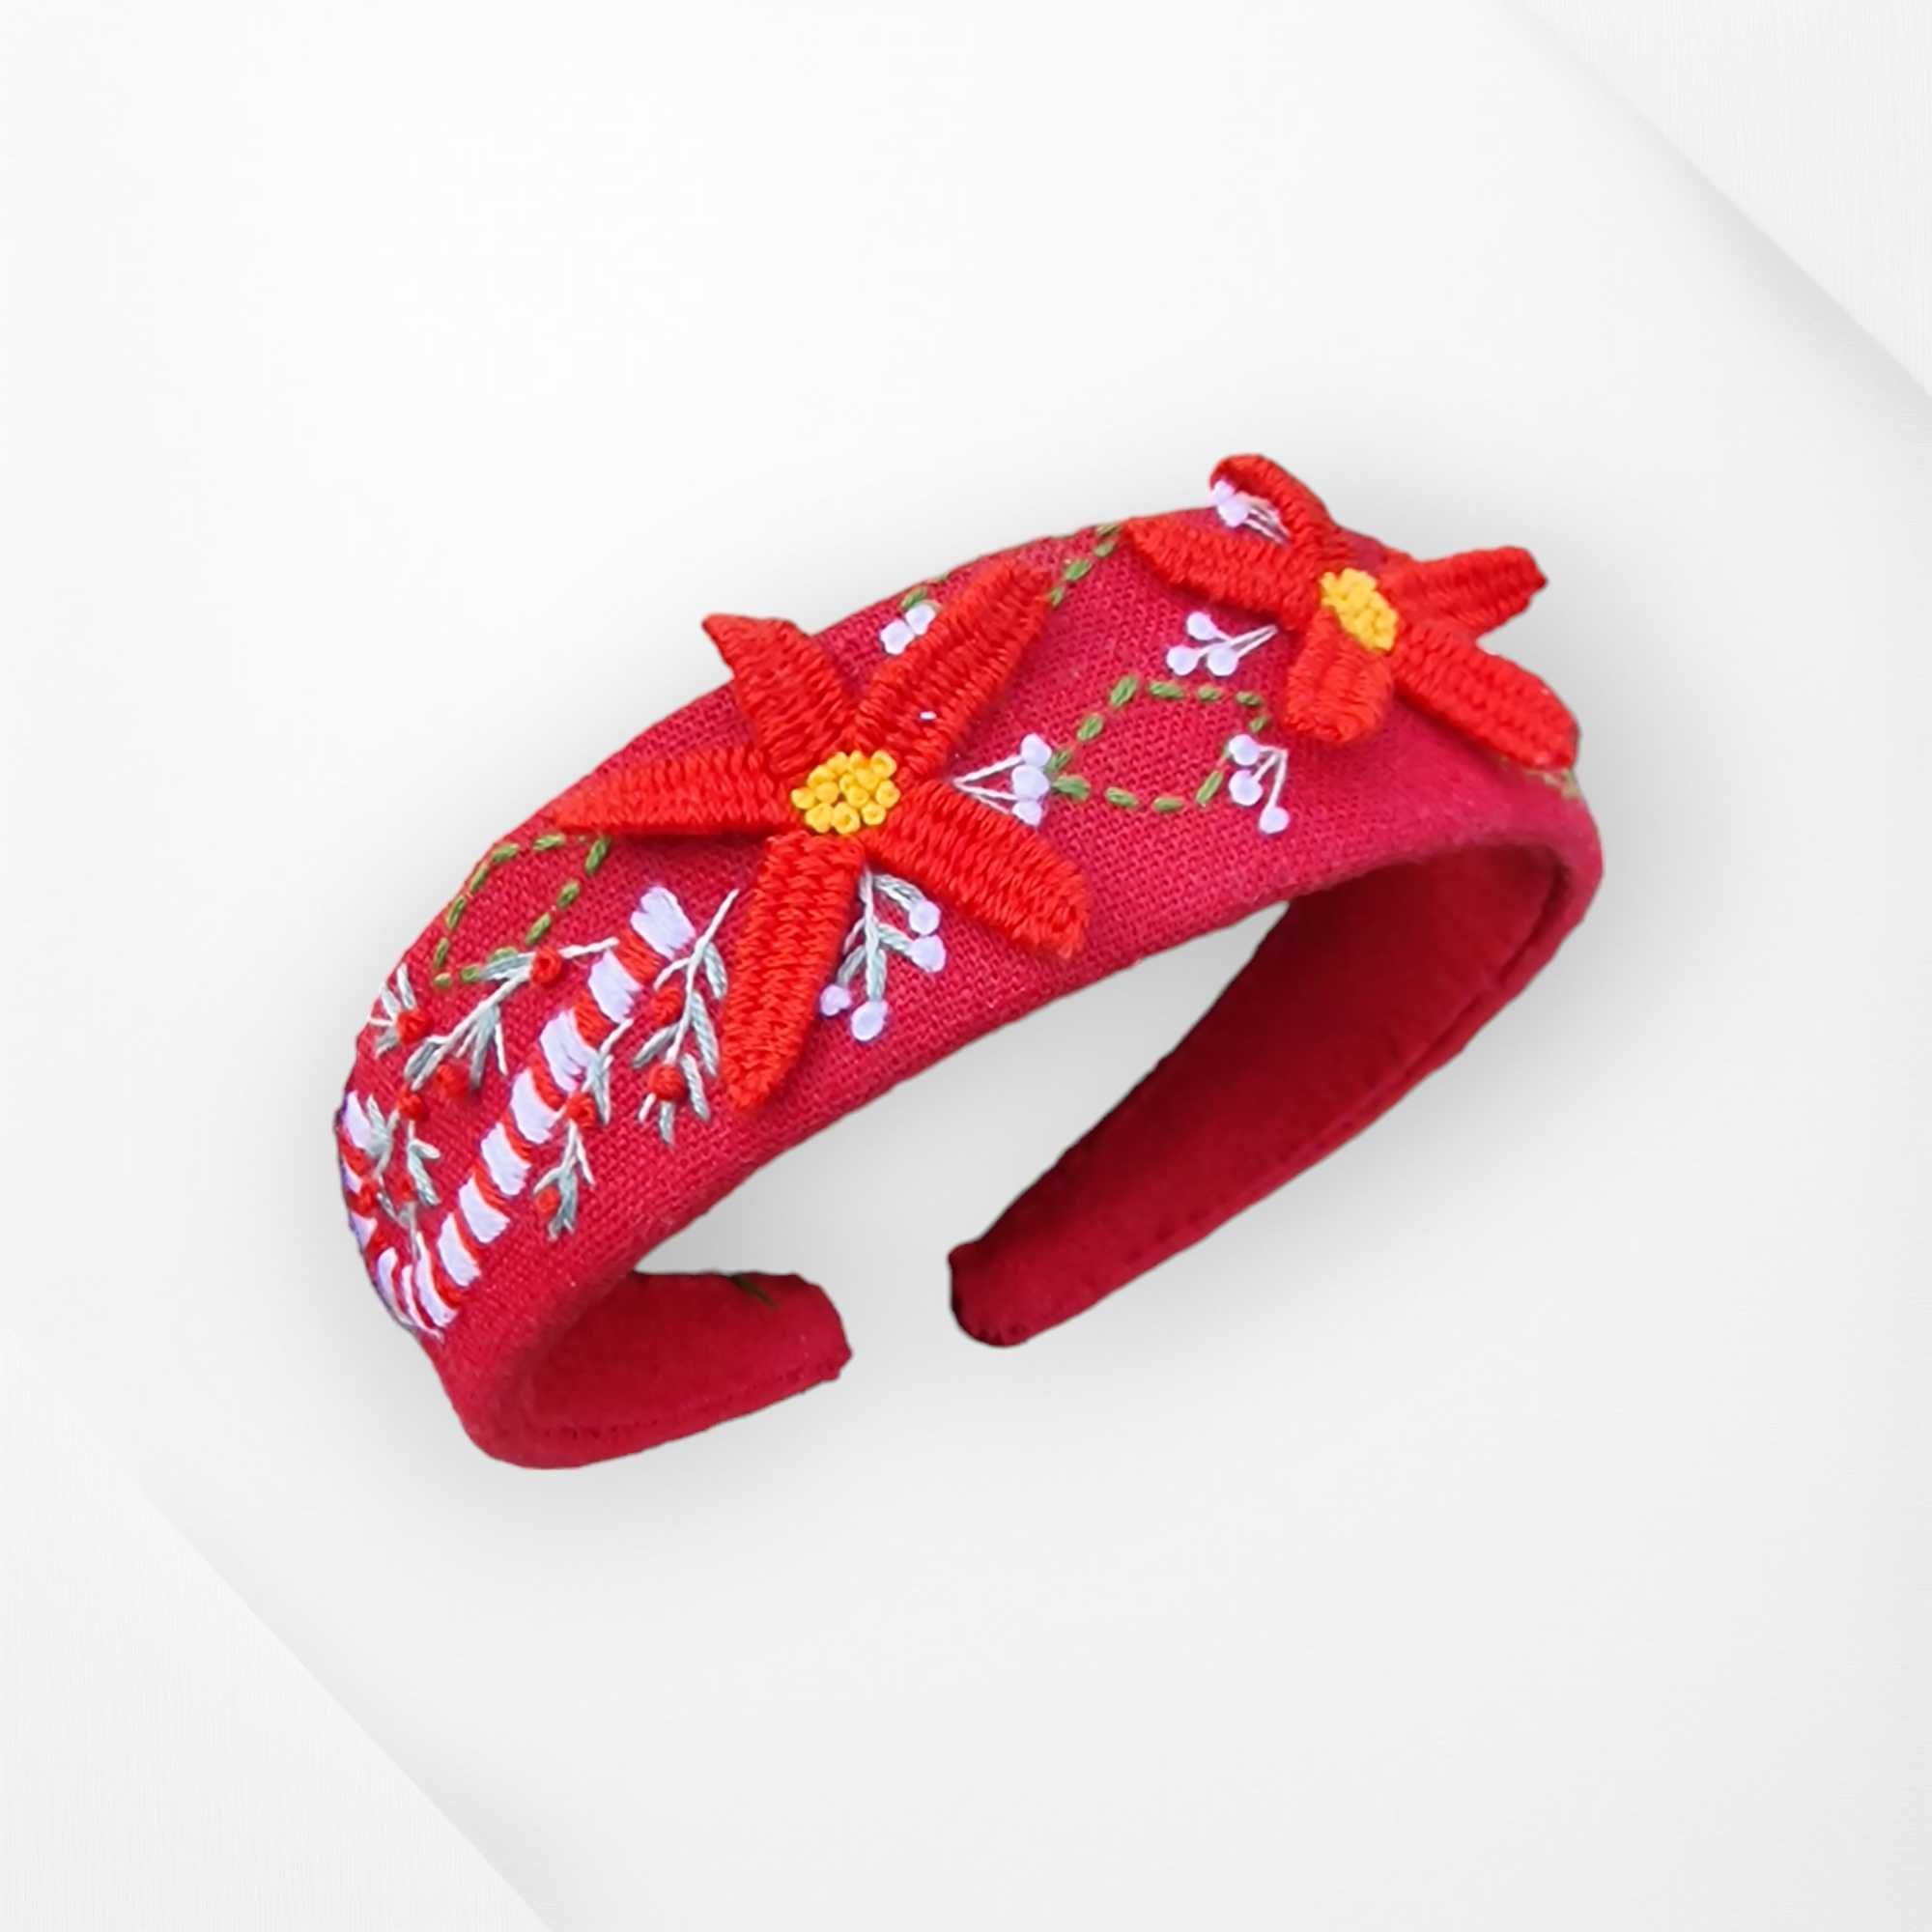 3D Hand embroidered headband - Christmas theme